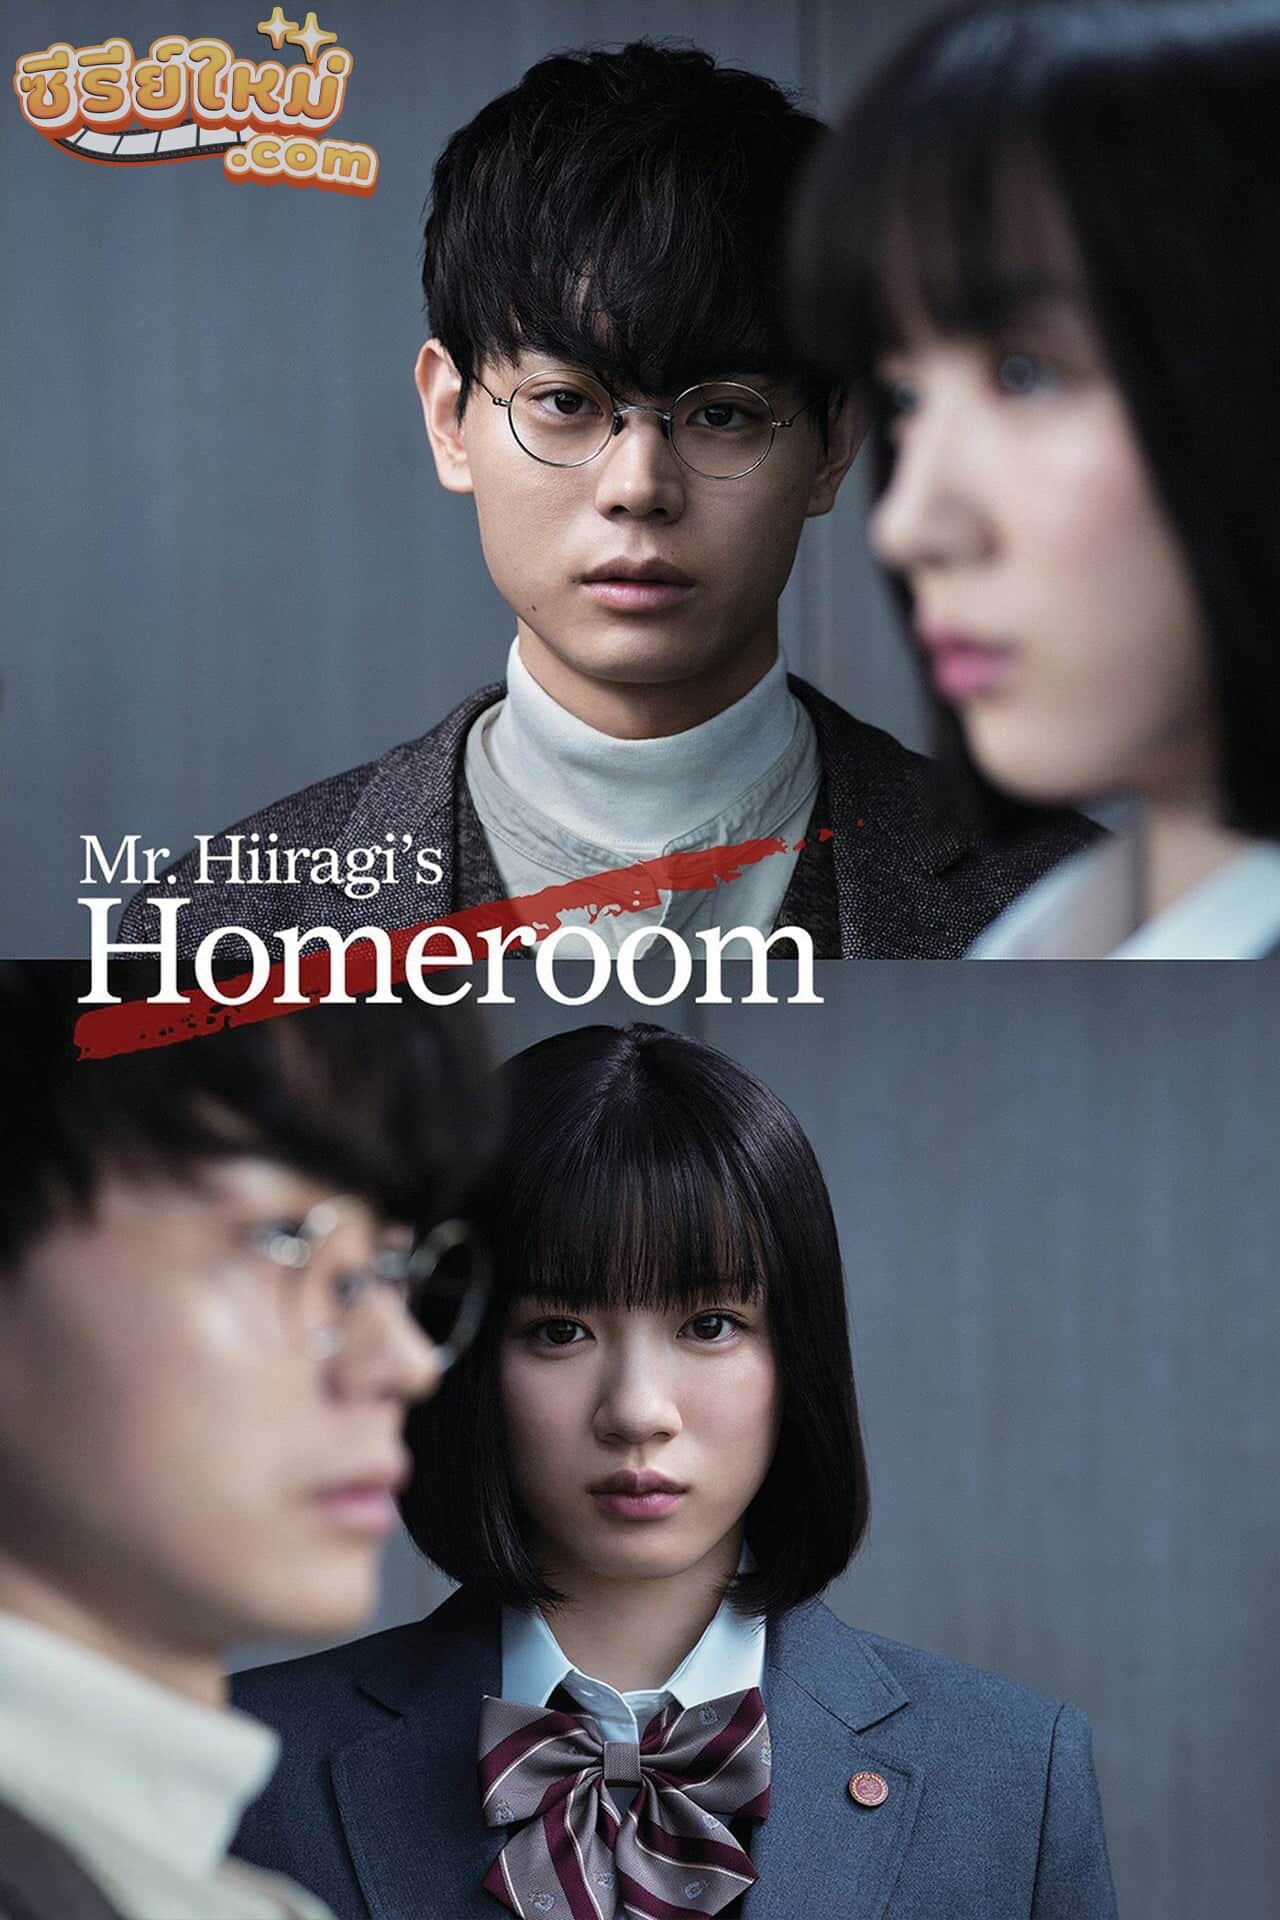 Mr. Hiiragi’s Homeroom 3 Nen A kumi (2019)